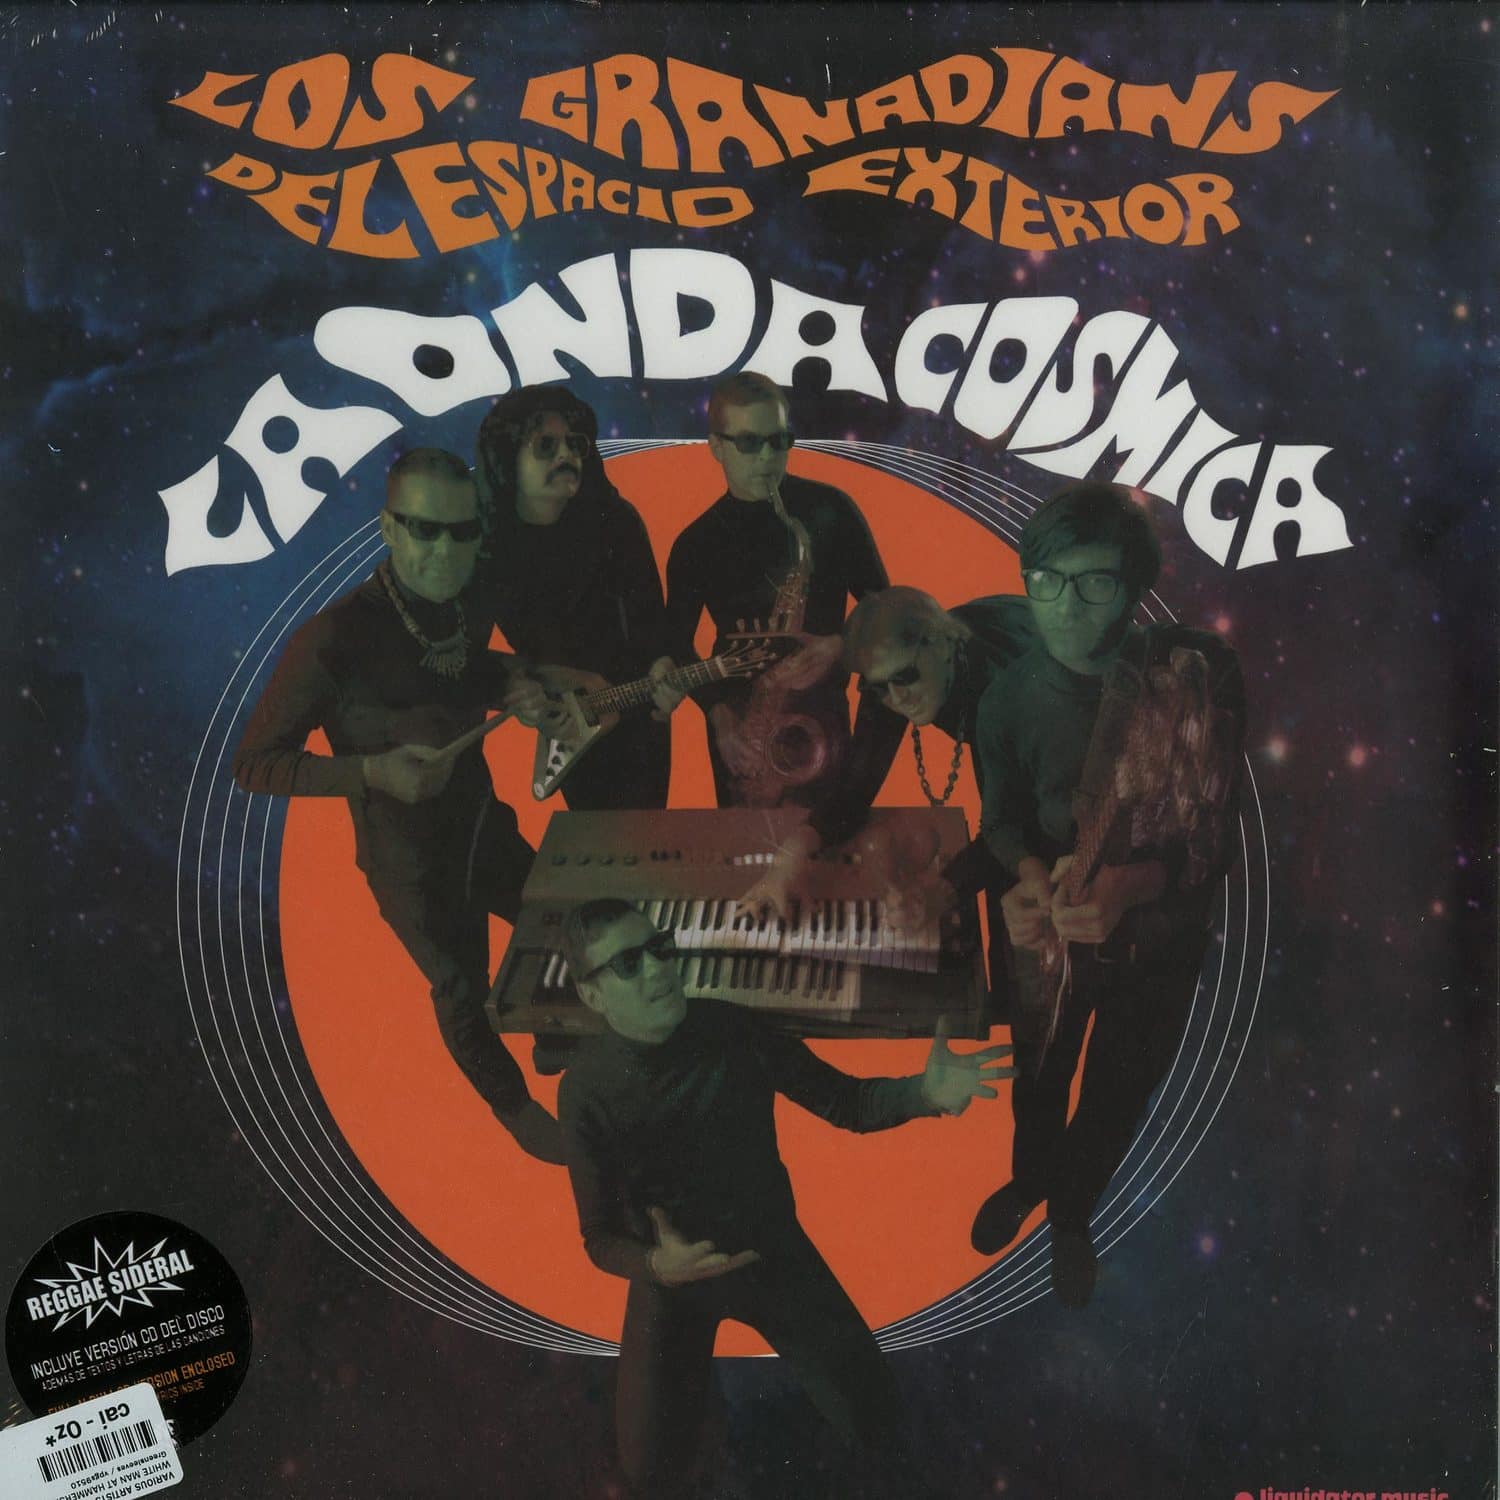 Los Granadians Del Espacio Exterior - LA ONDA COSMICA 